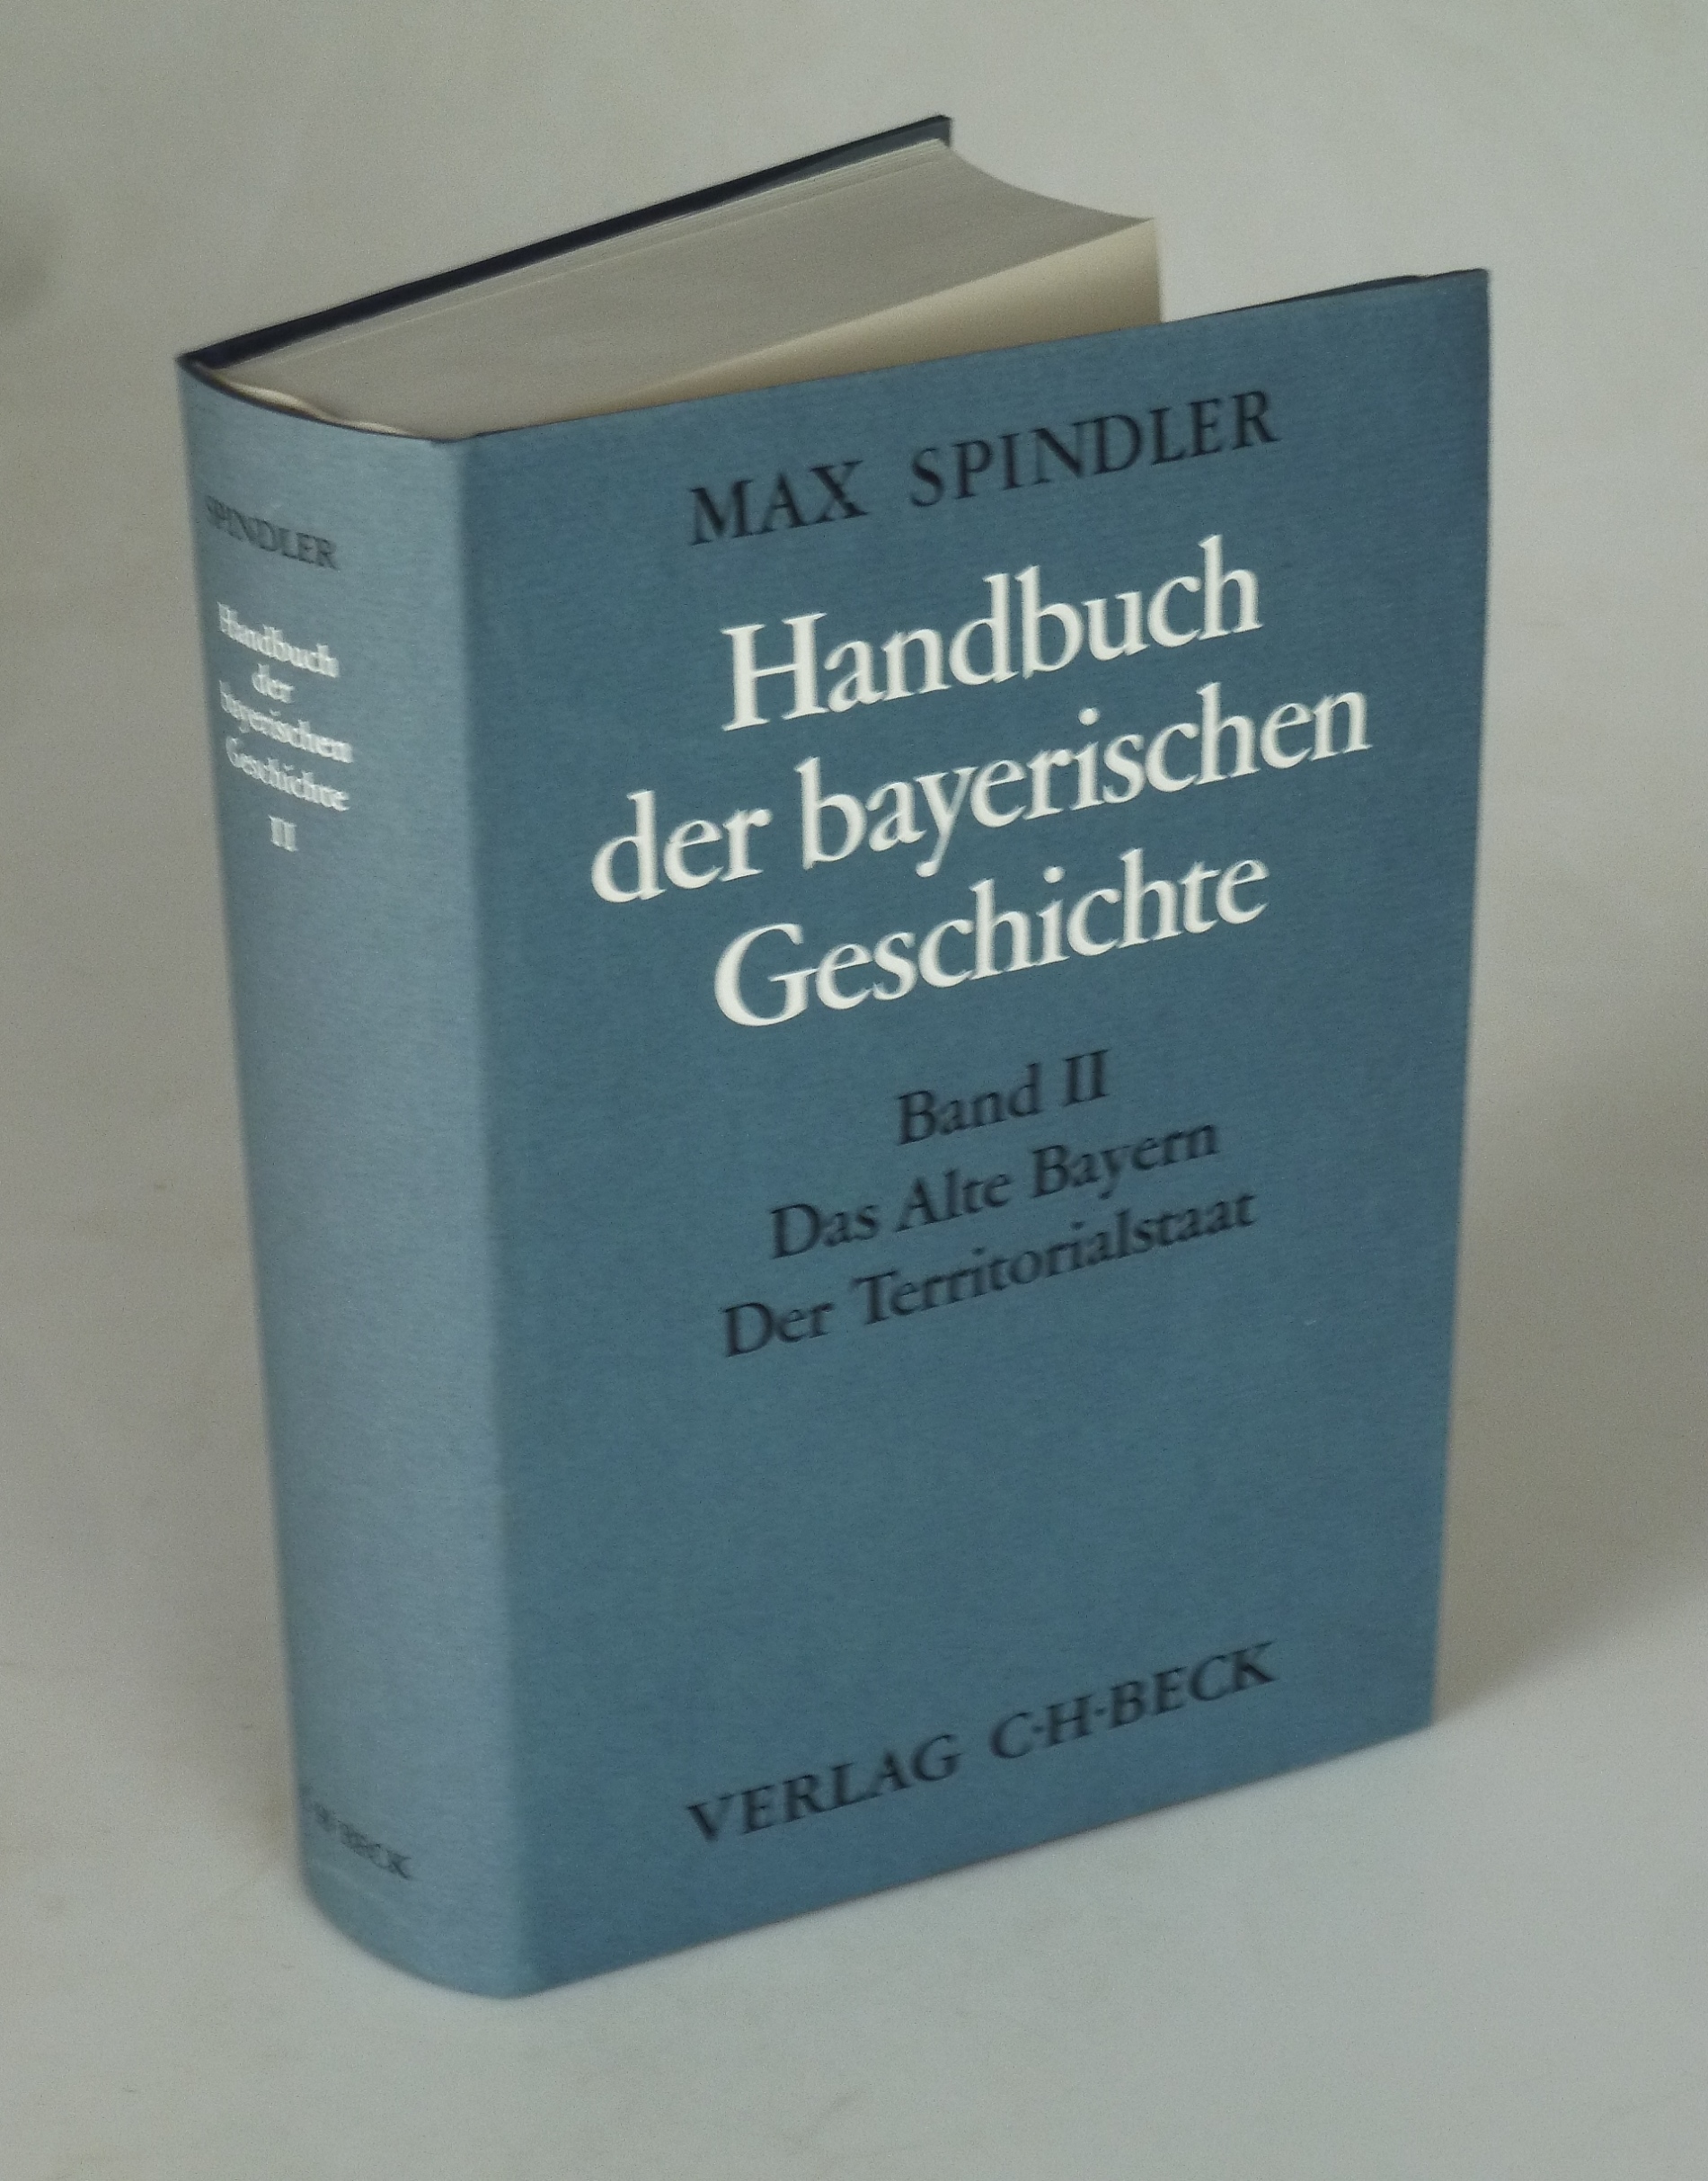 Handbuch der Bayerischen Geschichte 2. Bd., Das Alte Bayern. Der Territorialstaat vom Ausgang des 12. Jahrhunderts bis zum Ausgang des 18. Jahrhunderts. - SPINDLER, Max.